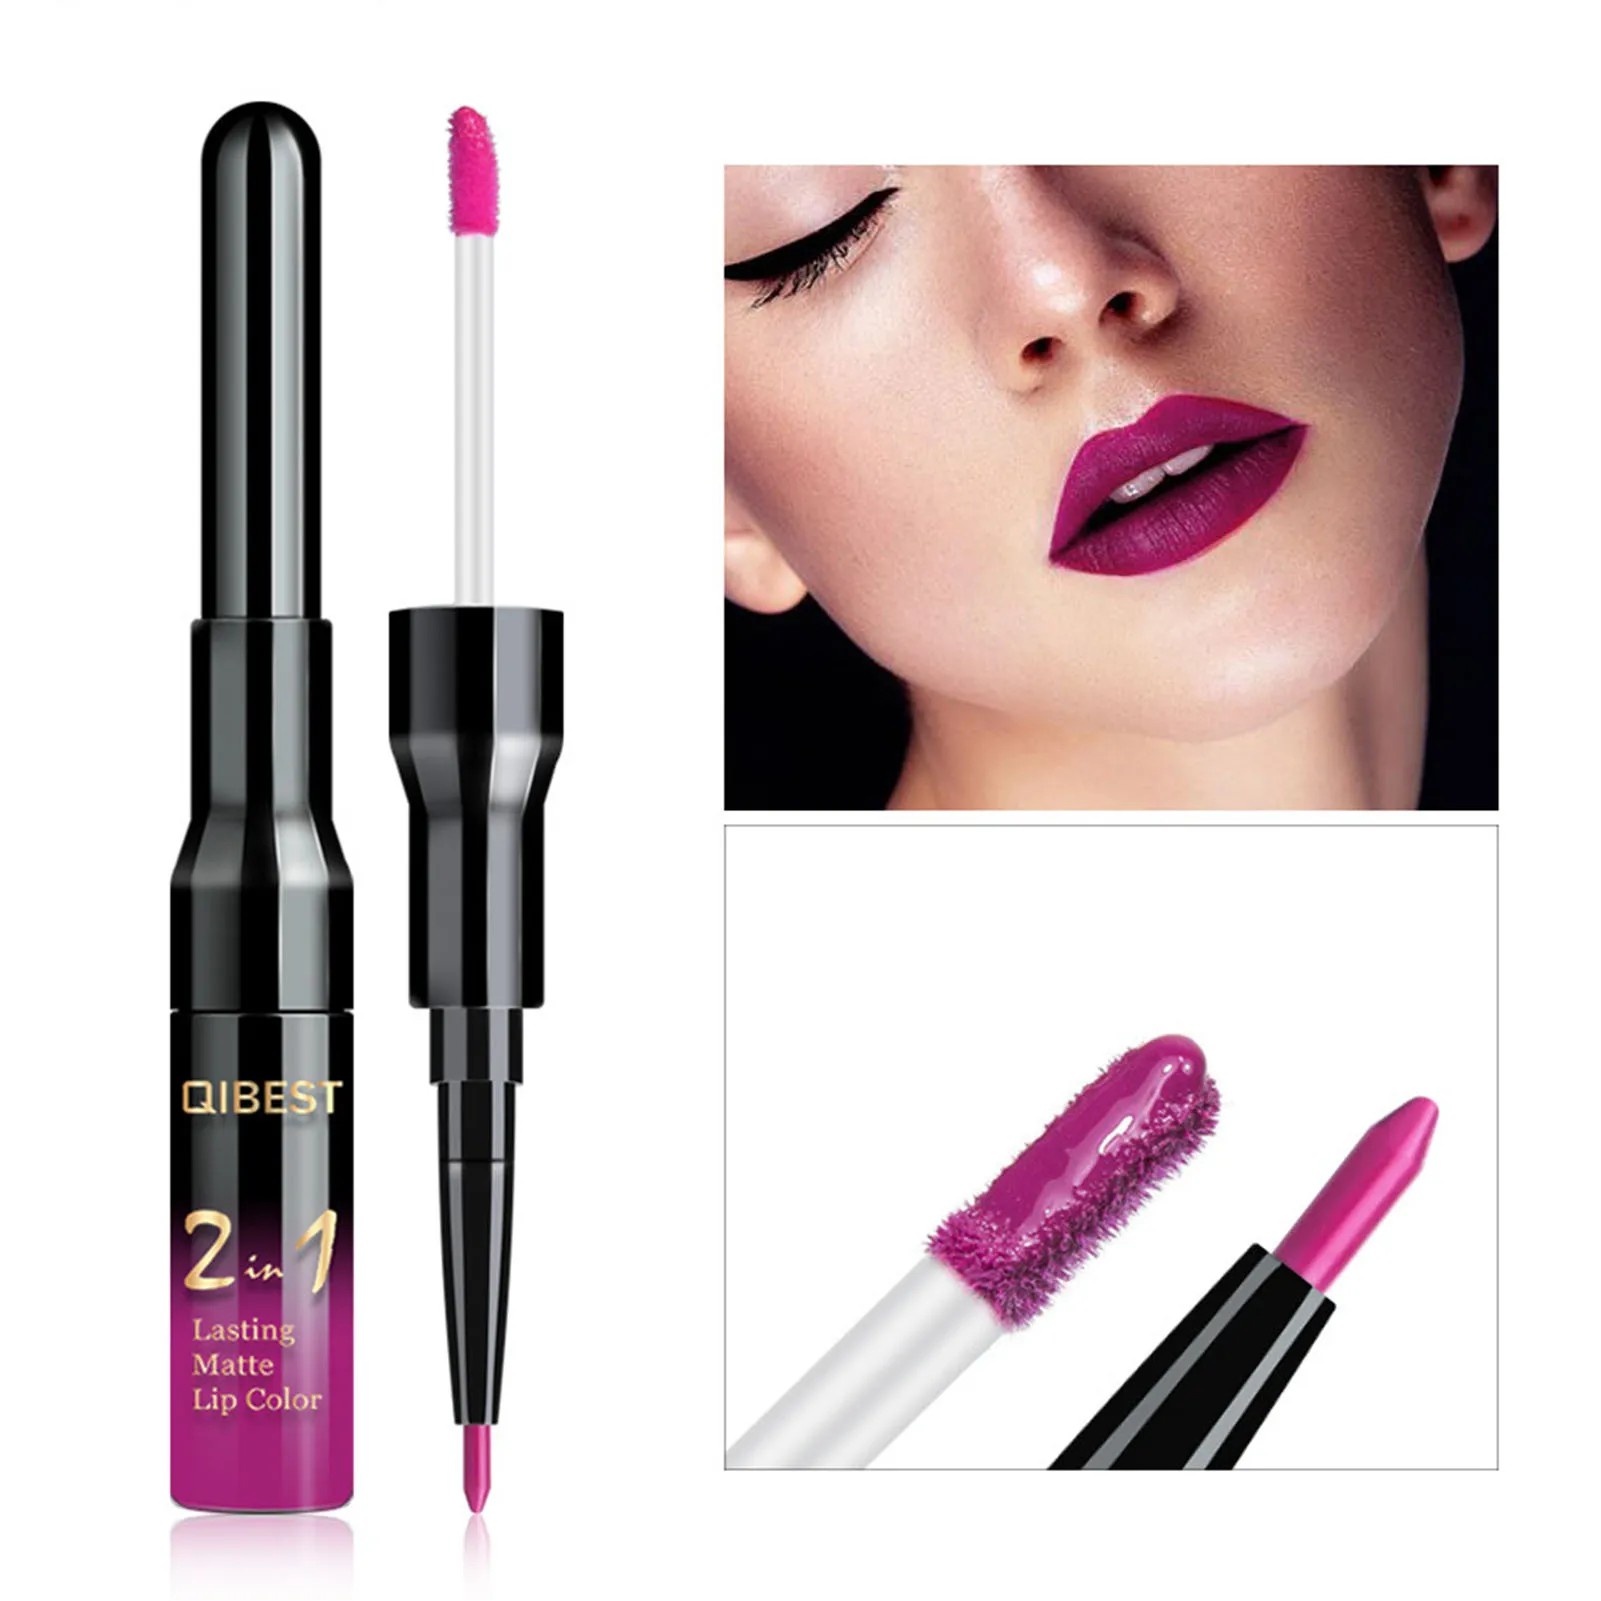 Waterproof Lip Gloss Matte Lip Liner 2 In 1 Double Head Long-lasting Lipliner Liquid Lipstick Pen Makeup Cosmetics